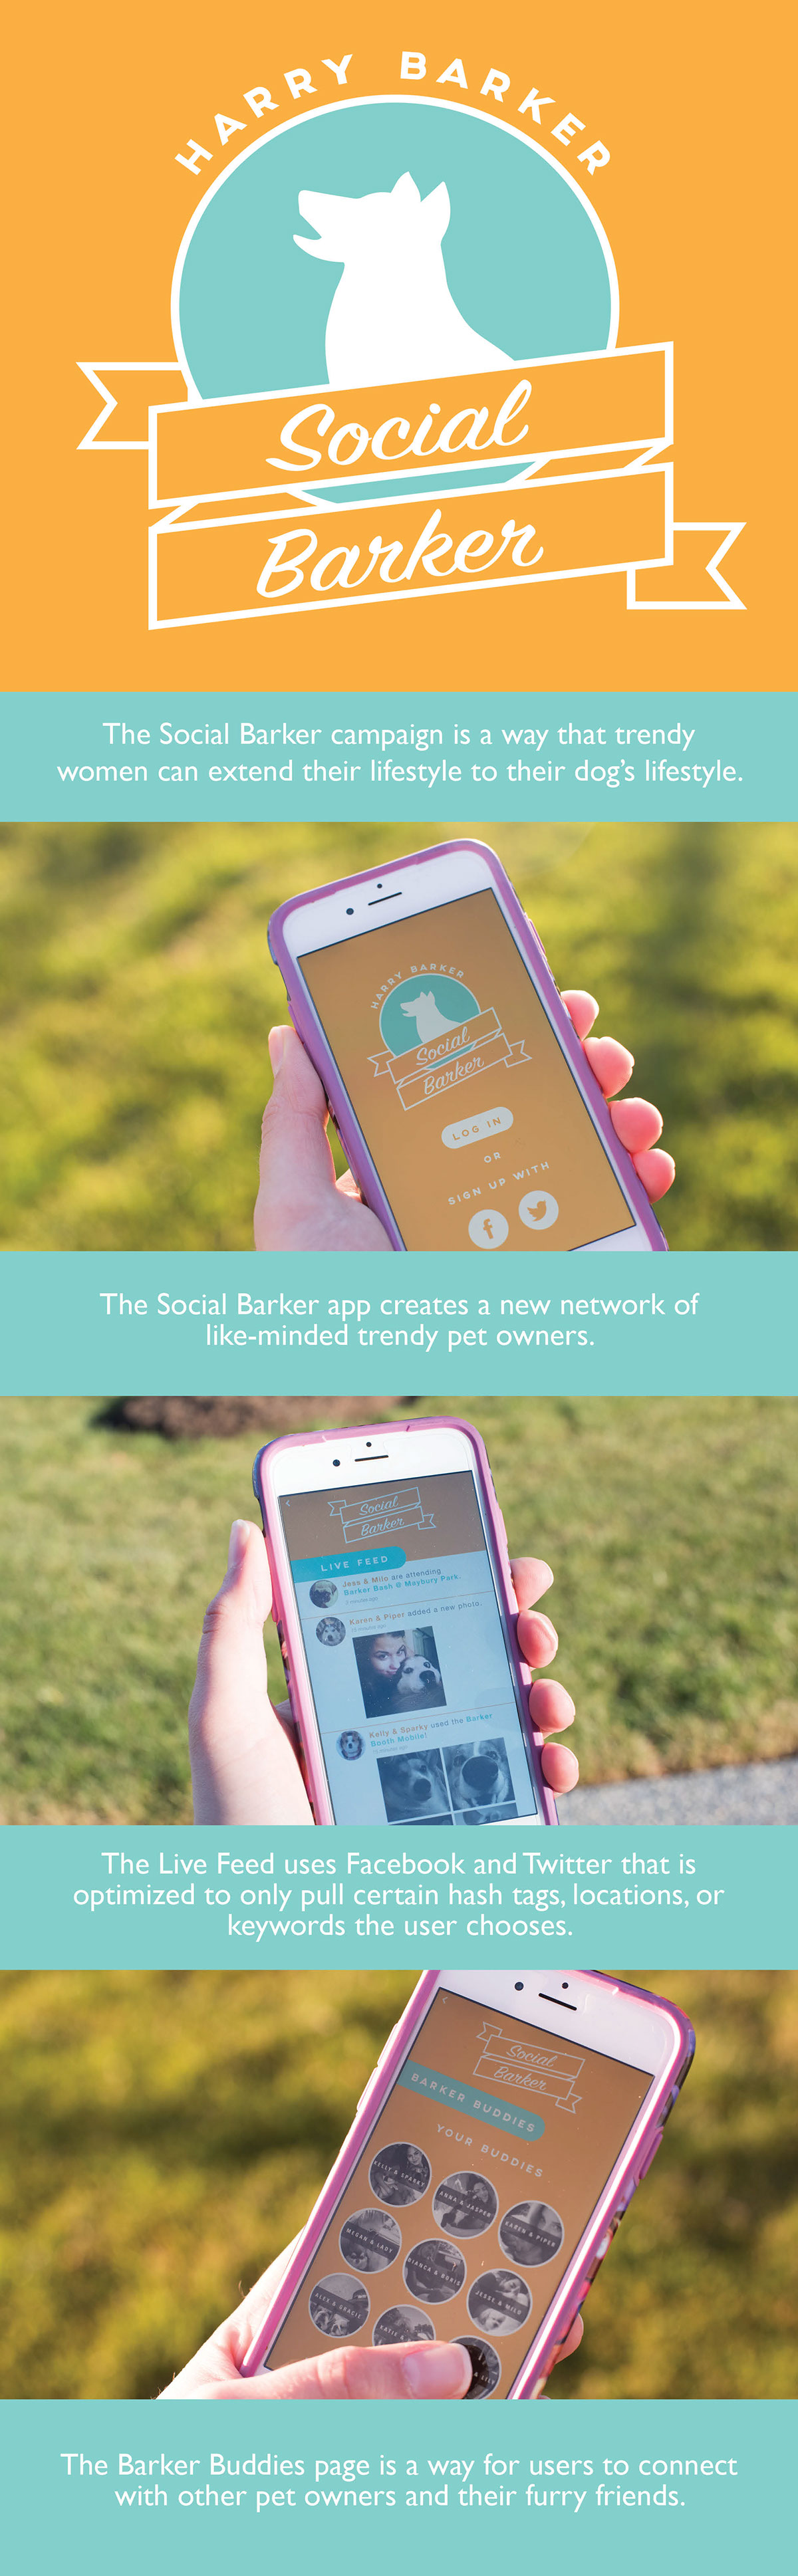 harry barker social barker digital campaign